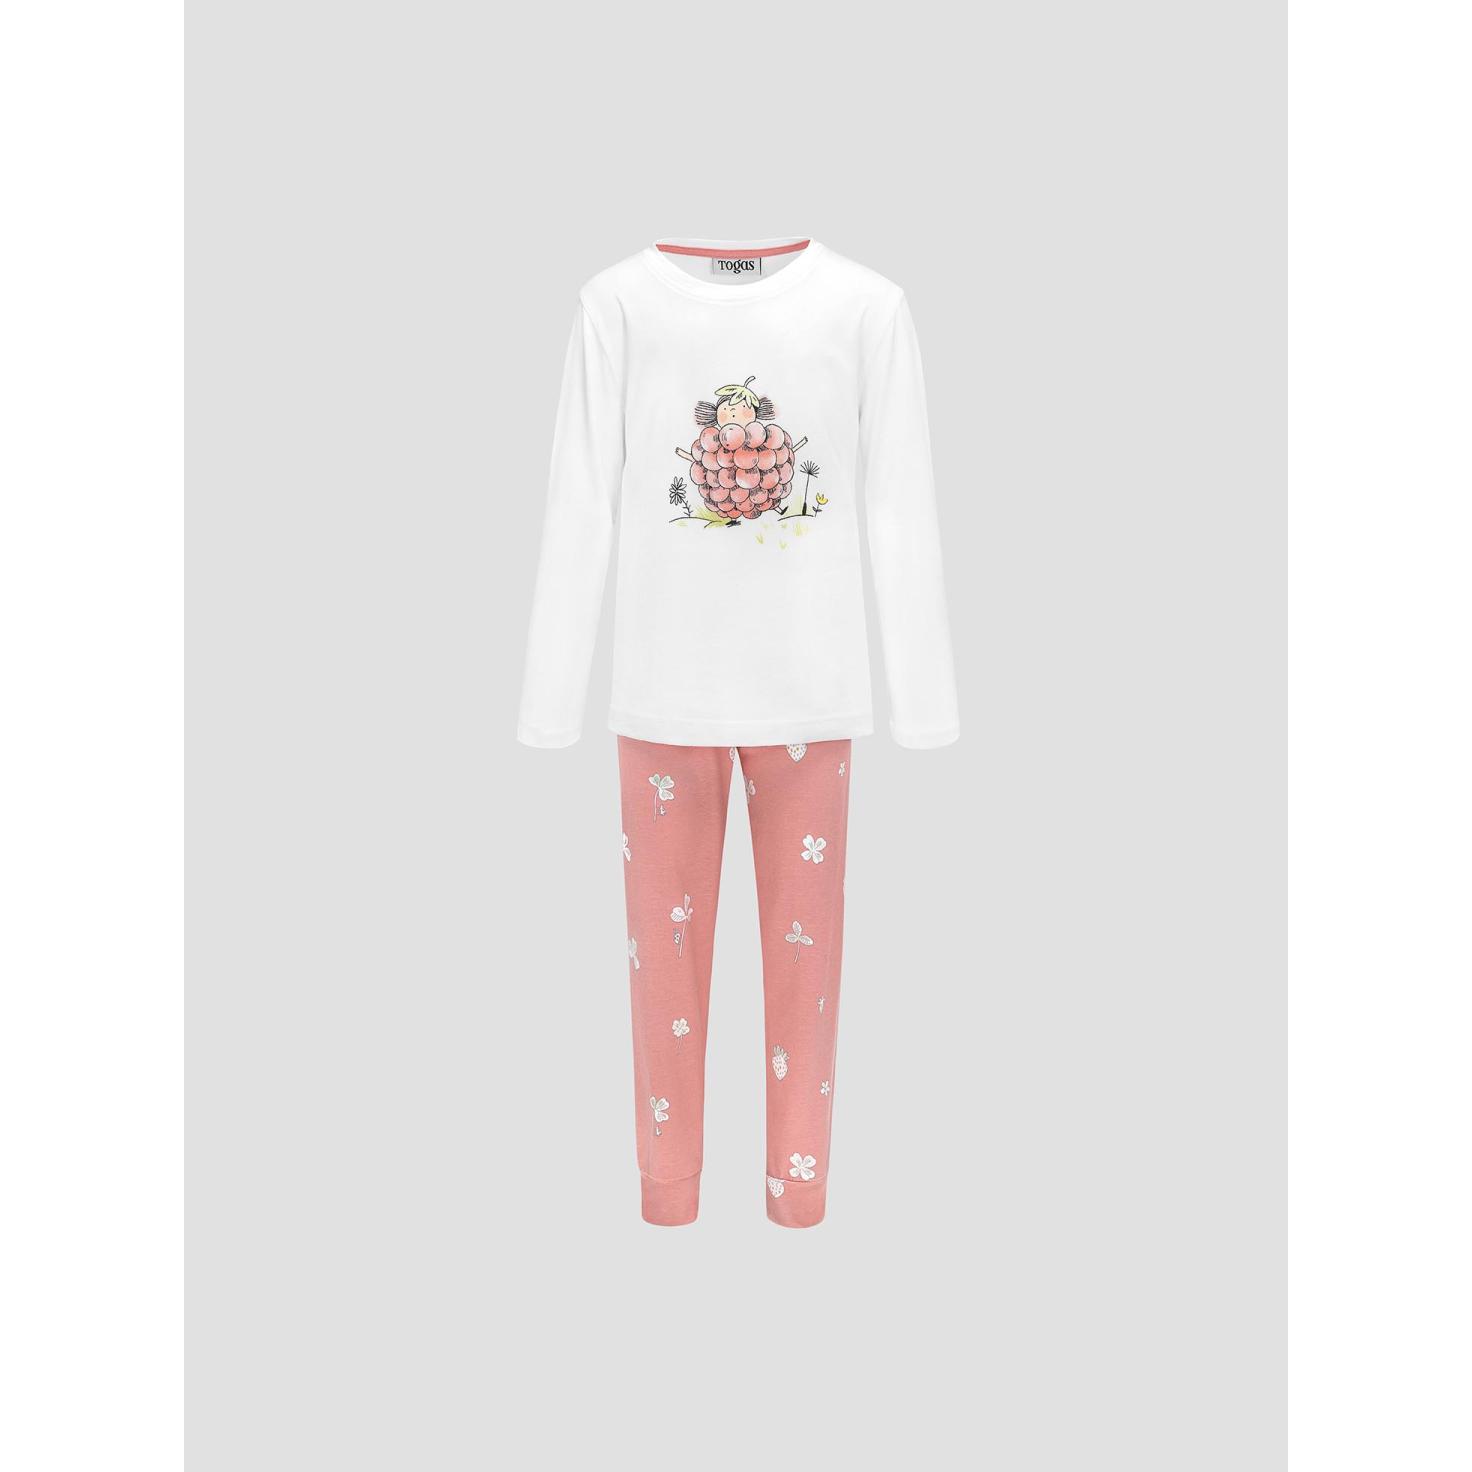 Пижама для девочек Kids by togas Стробби бело-розовый 92-98 см пижама для девочек kids by togas стробби бело розовый 116 122 см